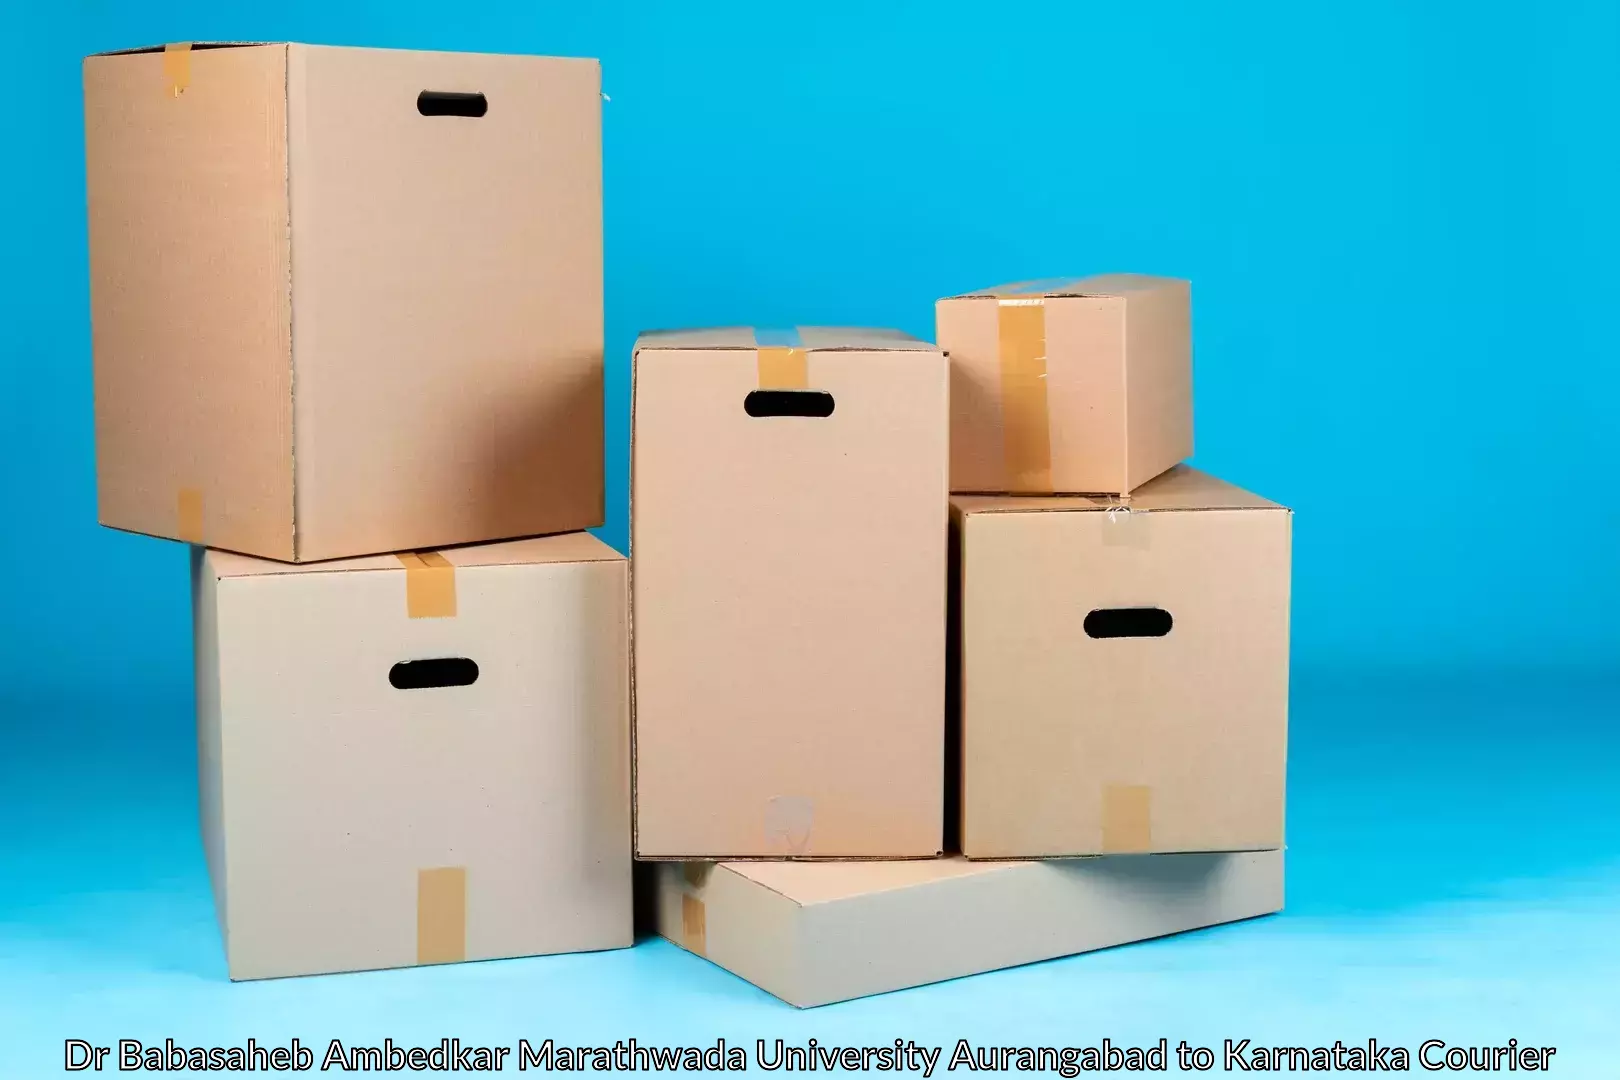 Trusted household movers Dr Babasaheb Ambedkar Marathwada University Aurangabad to Bhadravathi